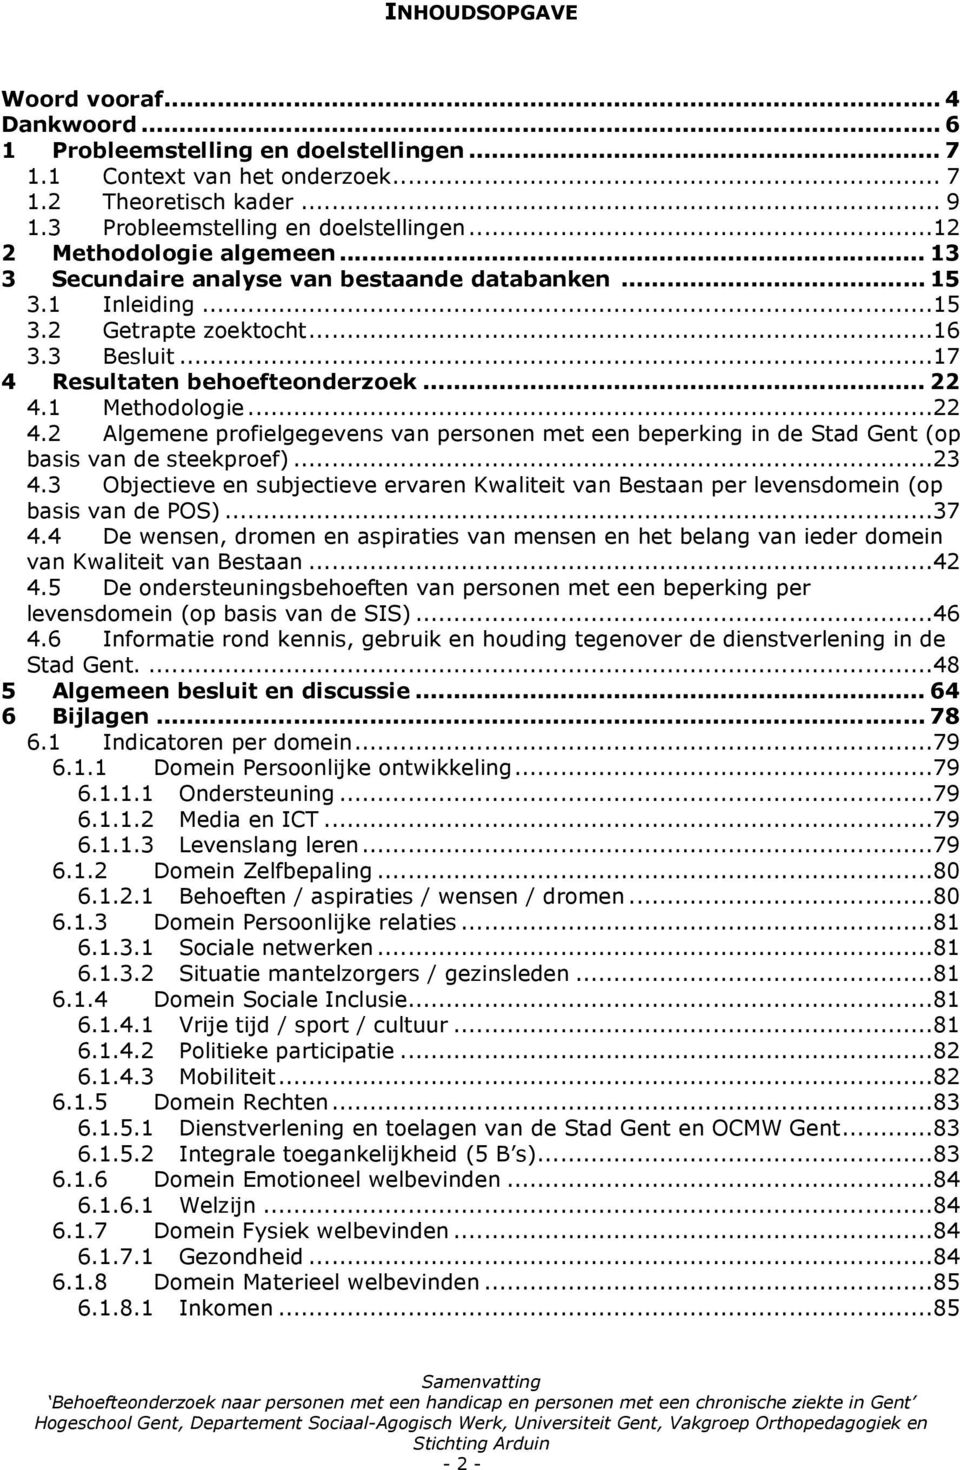 1 Methodologie...22 4.2 Algemene profielgegevens van personen met een beperking in de Stad Gent (op basis van de steekproef)...23 4.